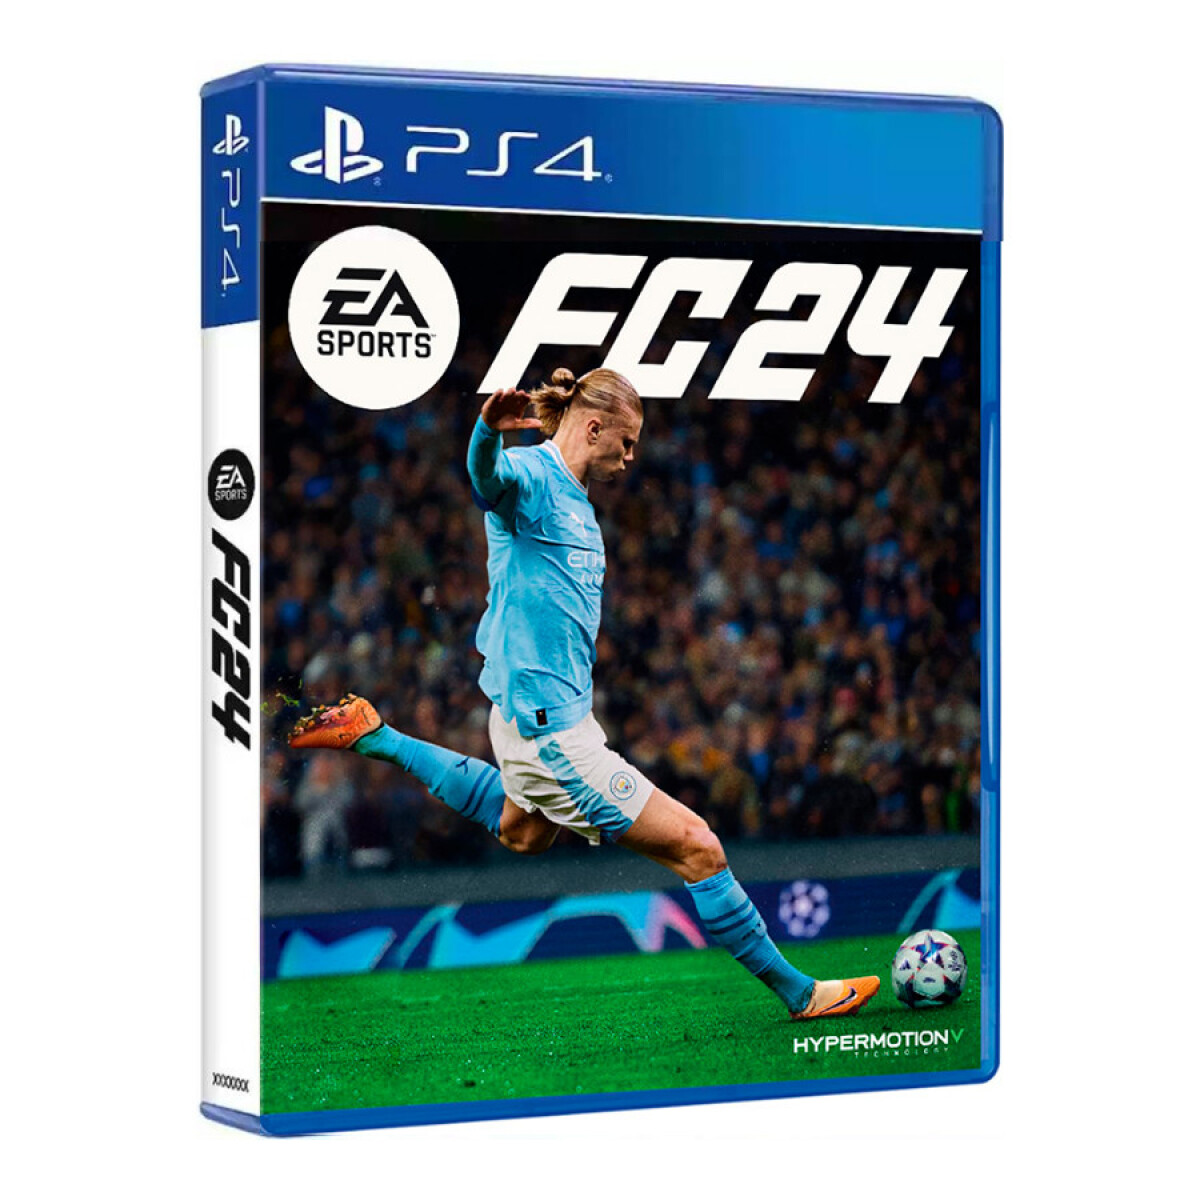 EA FC 24 (Nuevo FIFA) PS4 